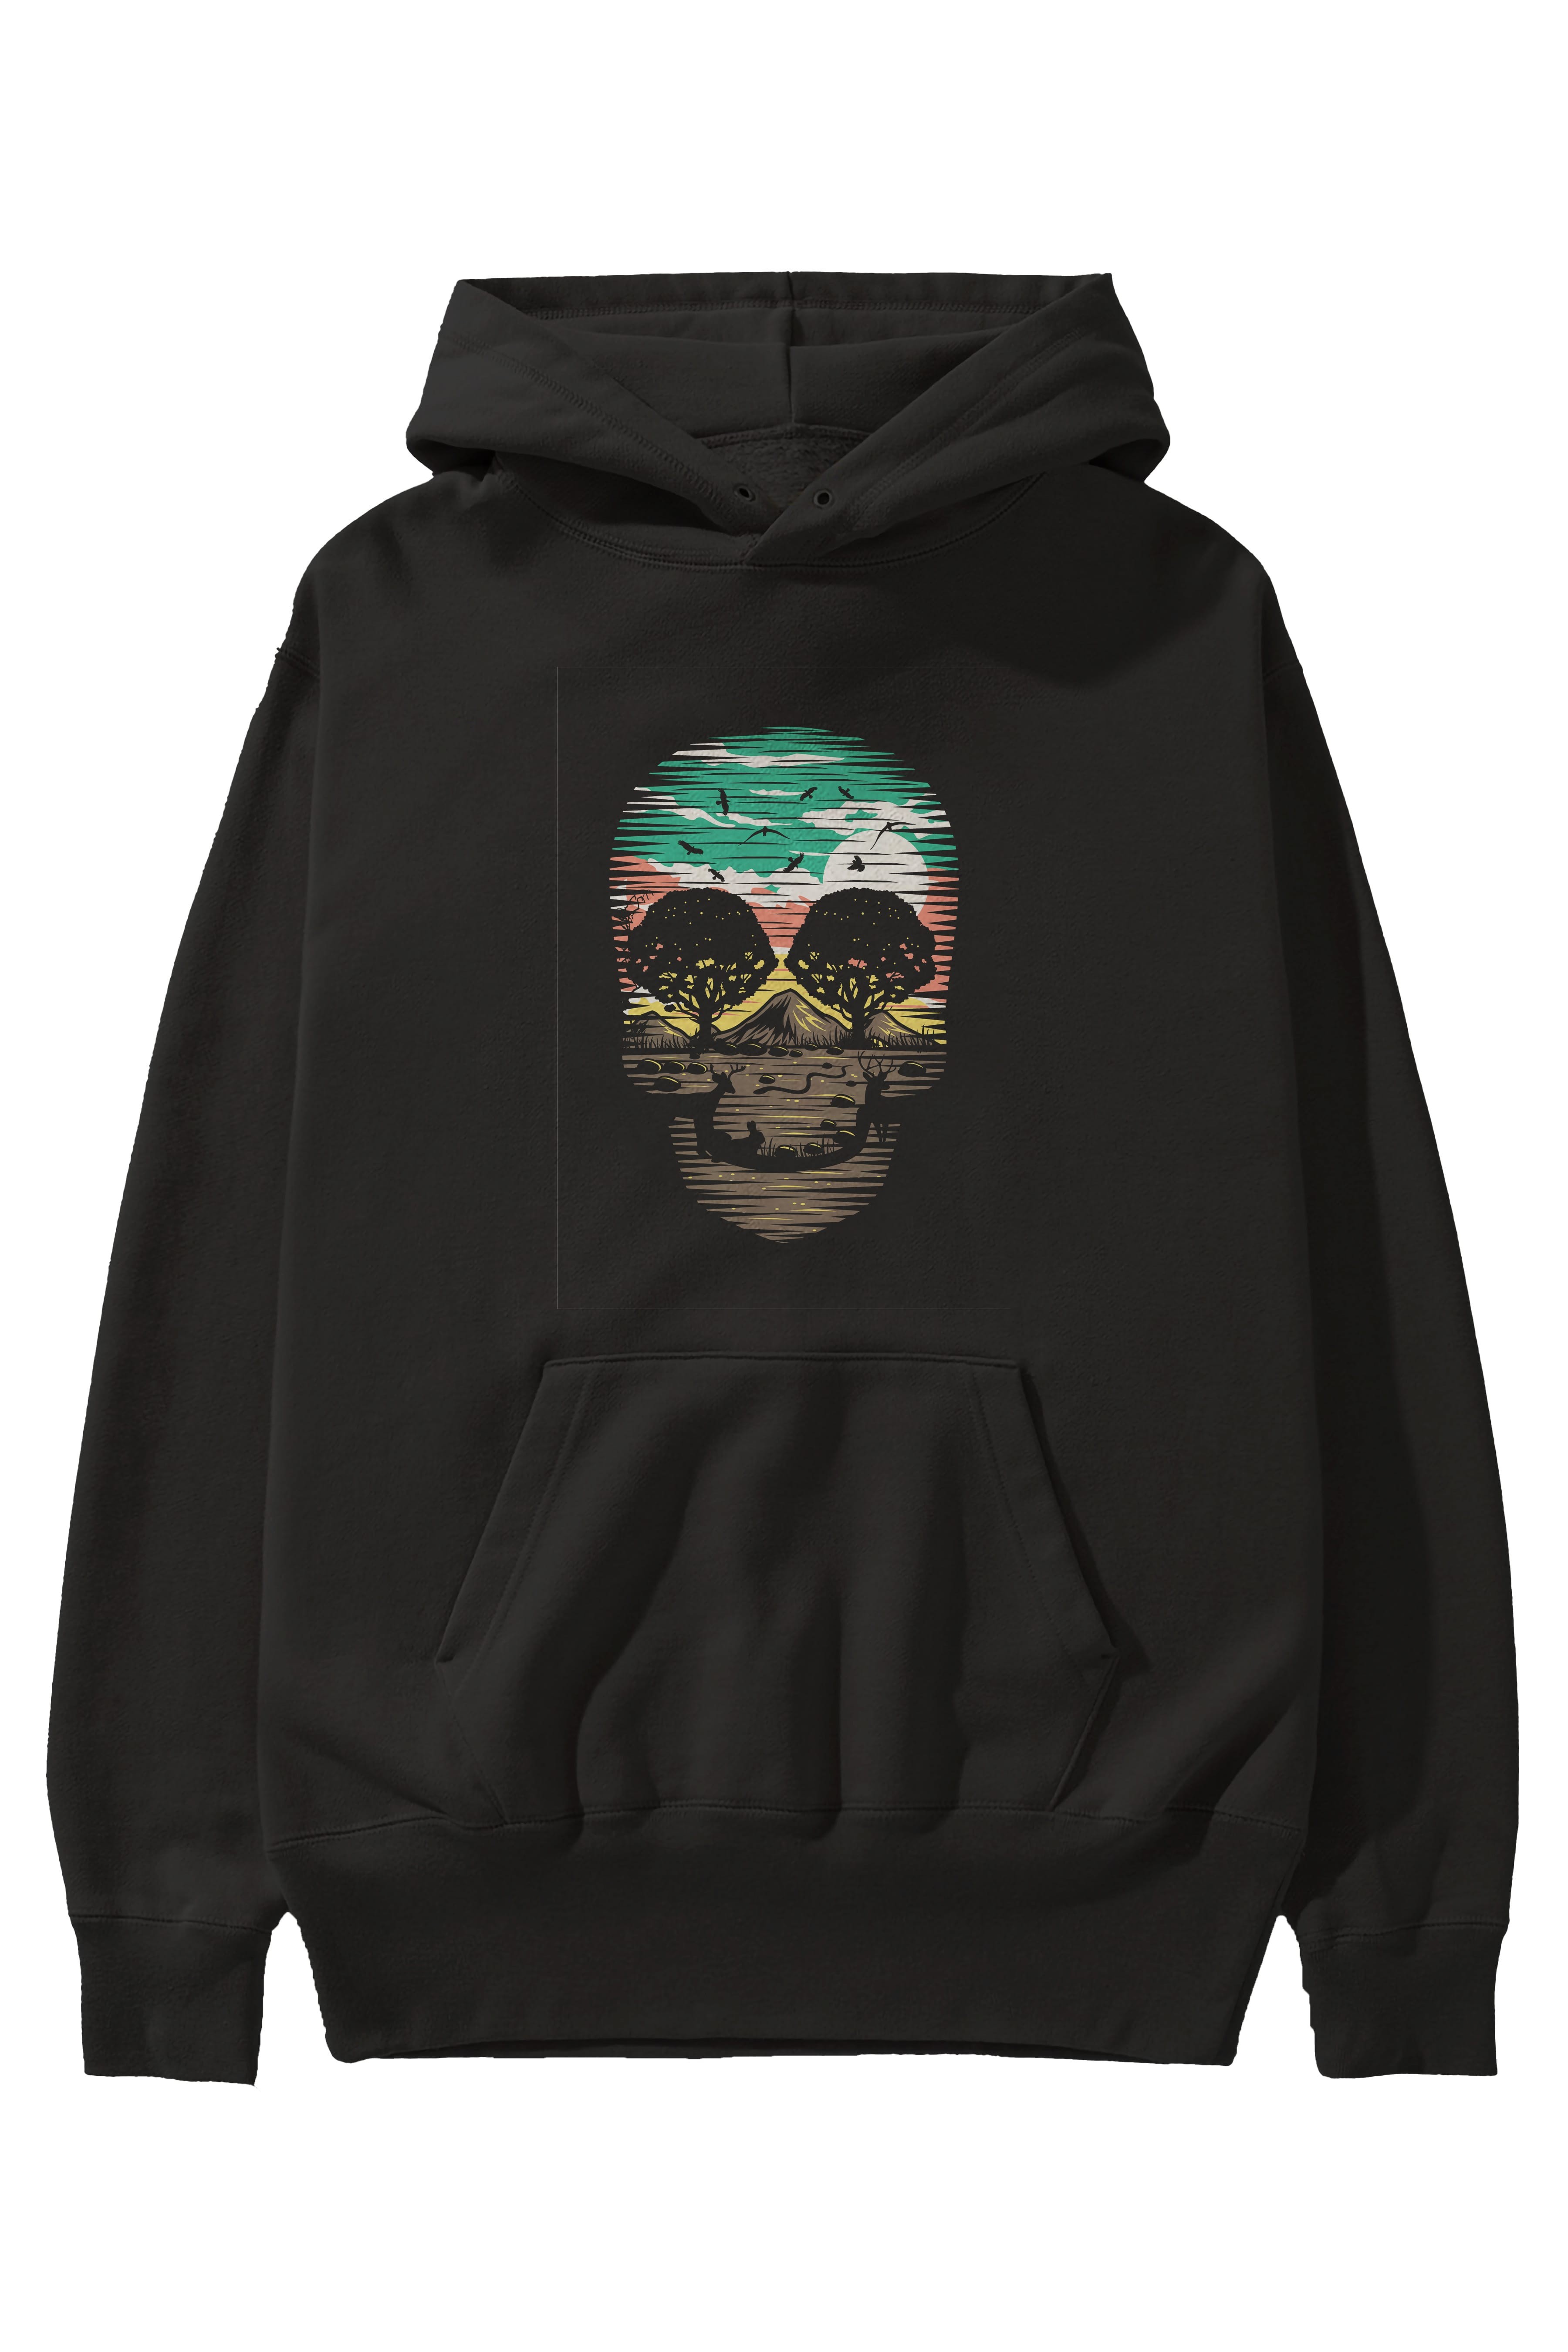 Skull Nature Ön Baskılı Hoodie Oversize Kapüşonlu Sweatshirt Erkek Kadın Unisex